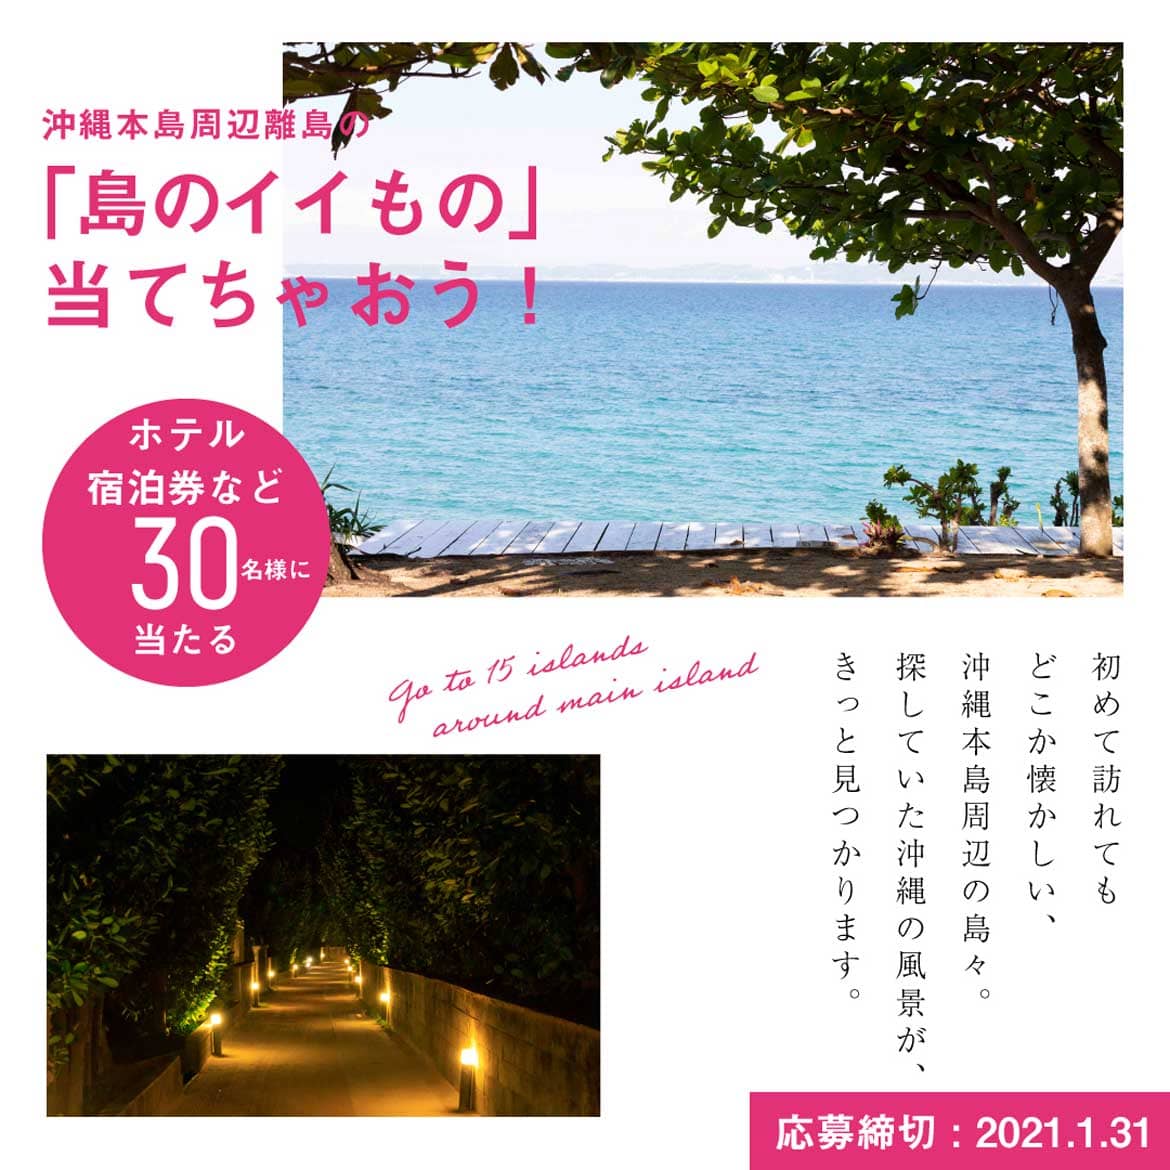 「島のイイもの」当てちゃおう！「沖縄本島周辺15離島」の魅力を体感できるプレゼントキャンペーン開催中！